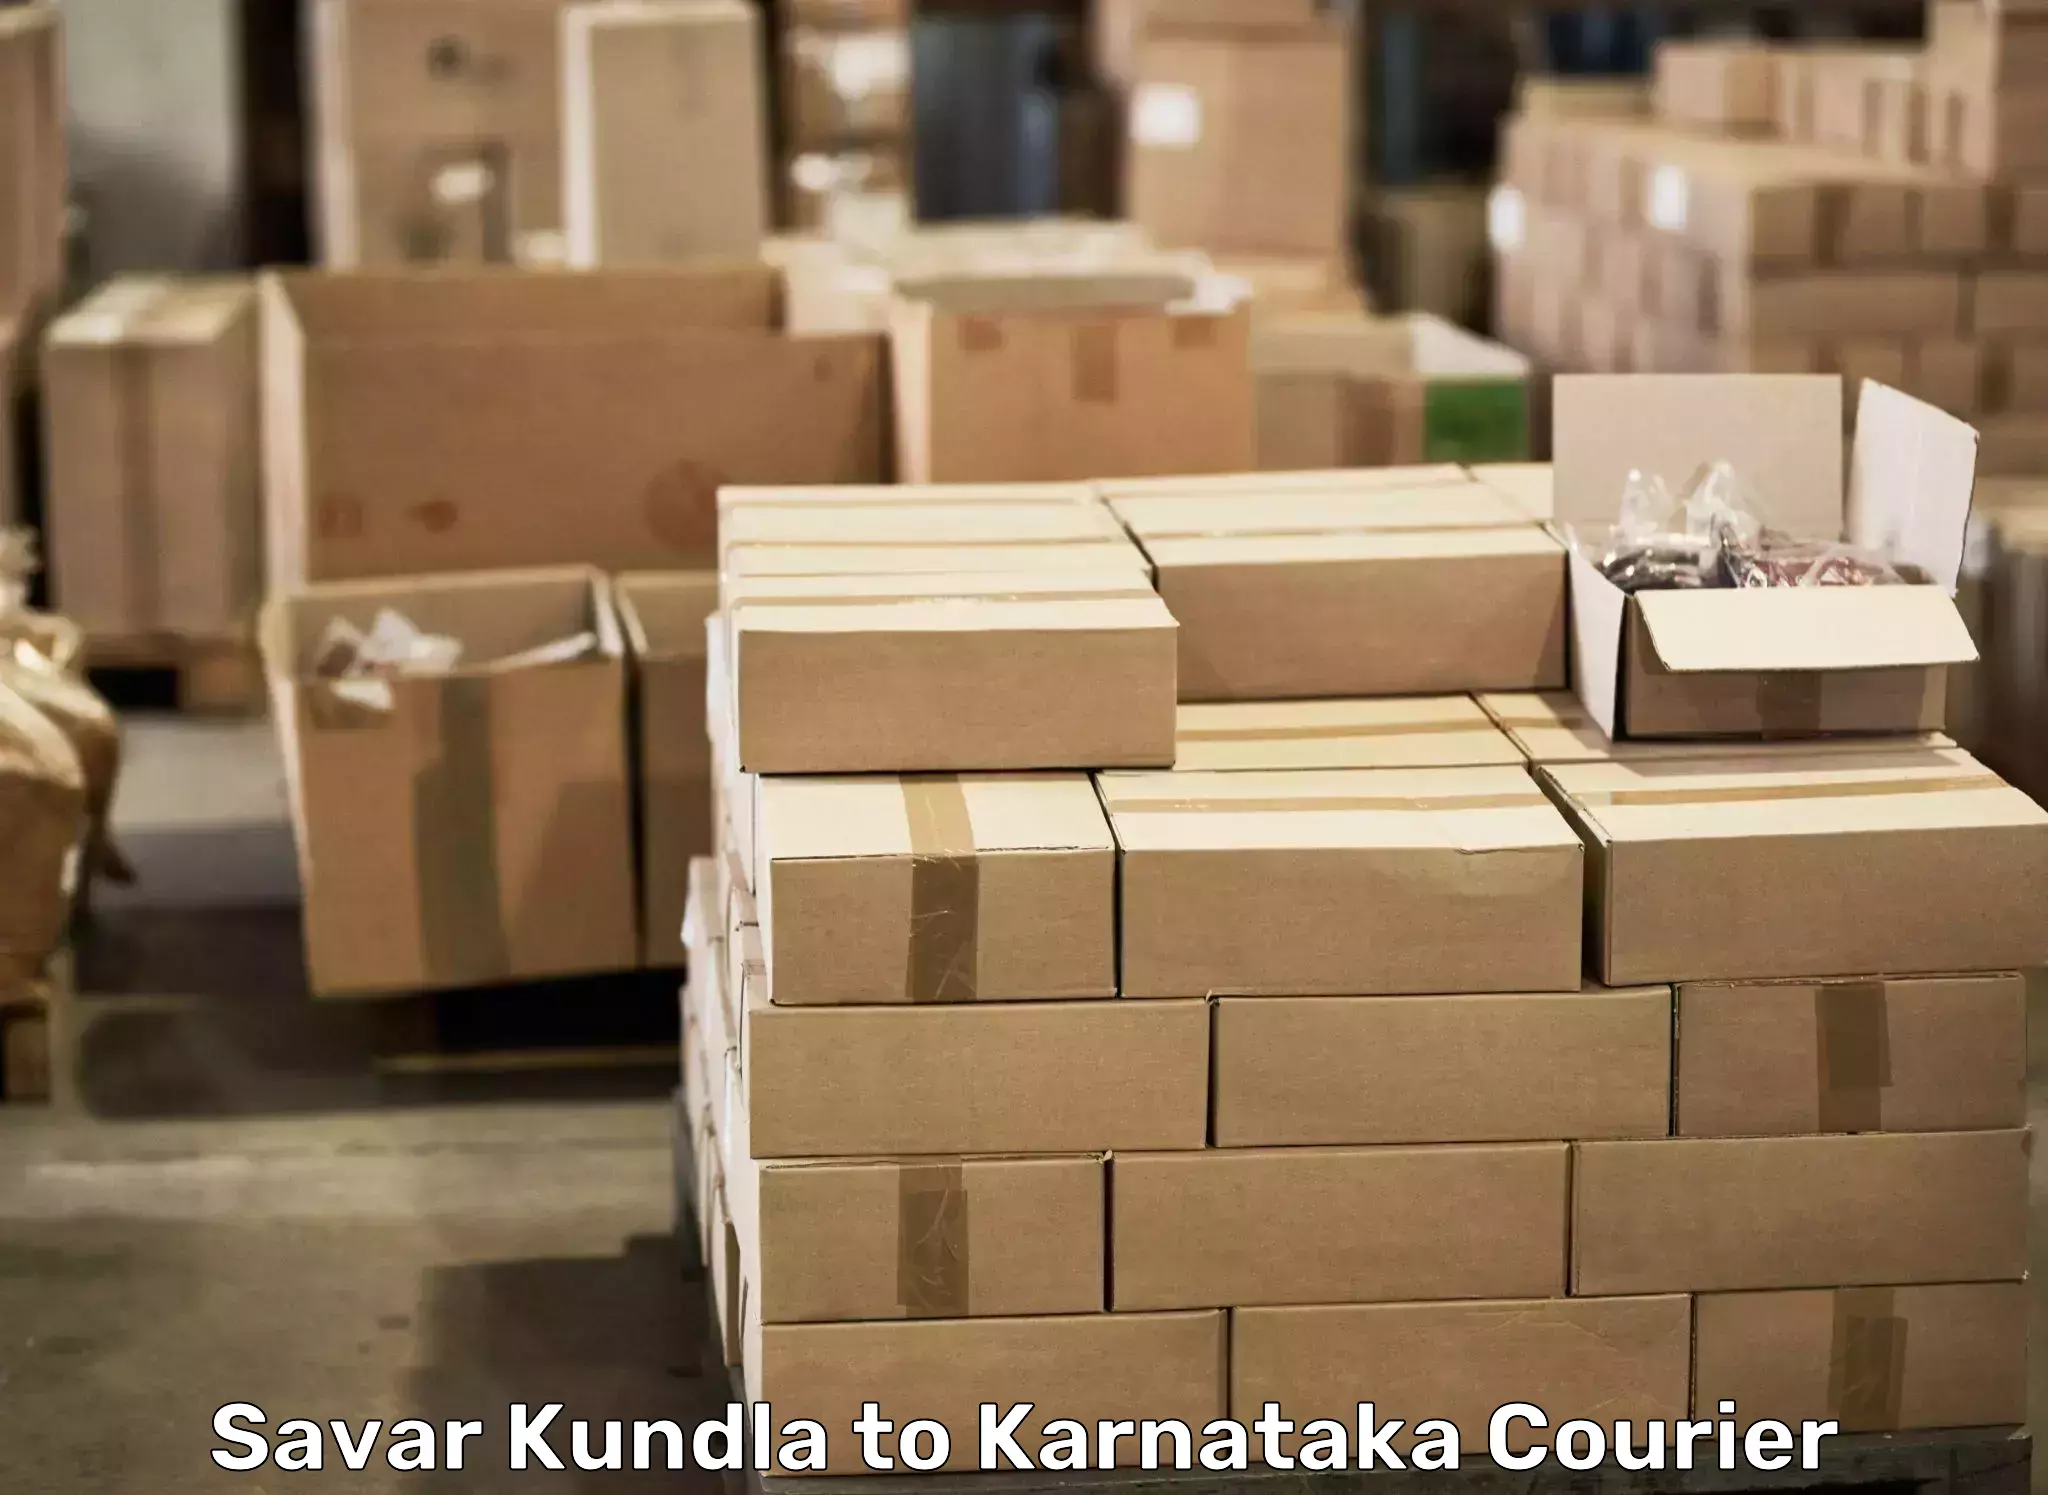 Moving and packing experts Savar Kundla to Mundgod